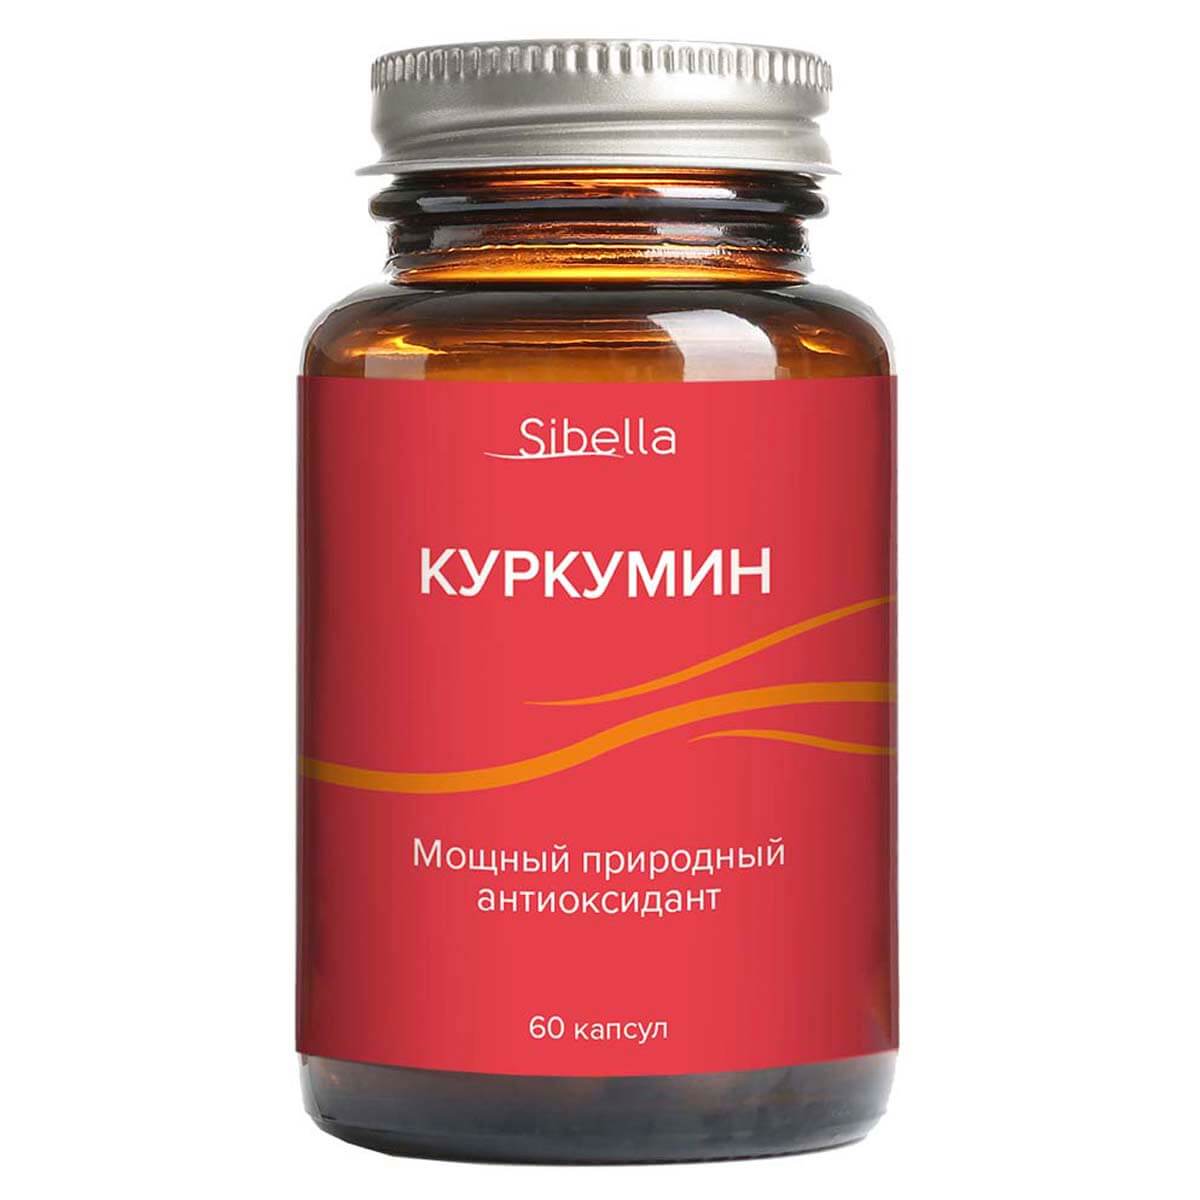 Куркумин. Мощный природный антиоксидант, капсулы 0,3 г, 60 шт, Sibella - фото 1